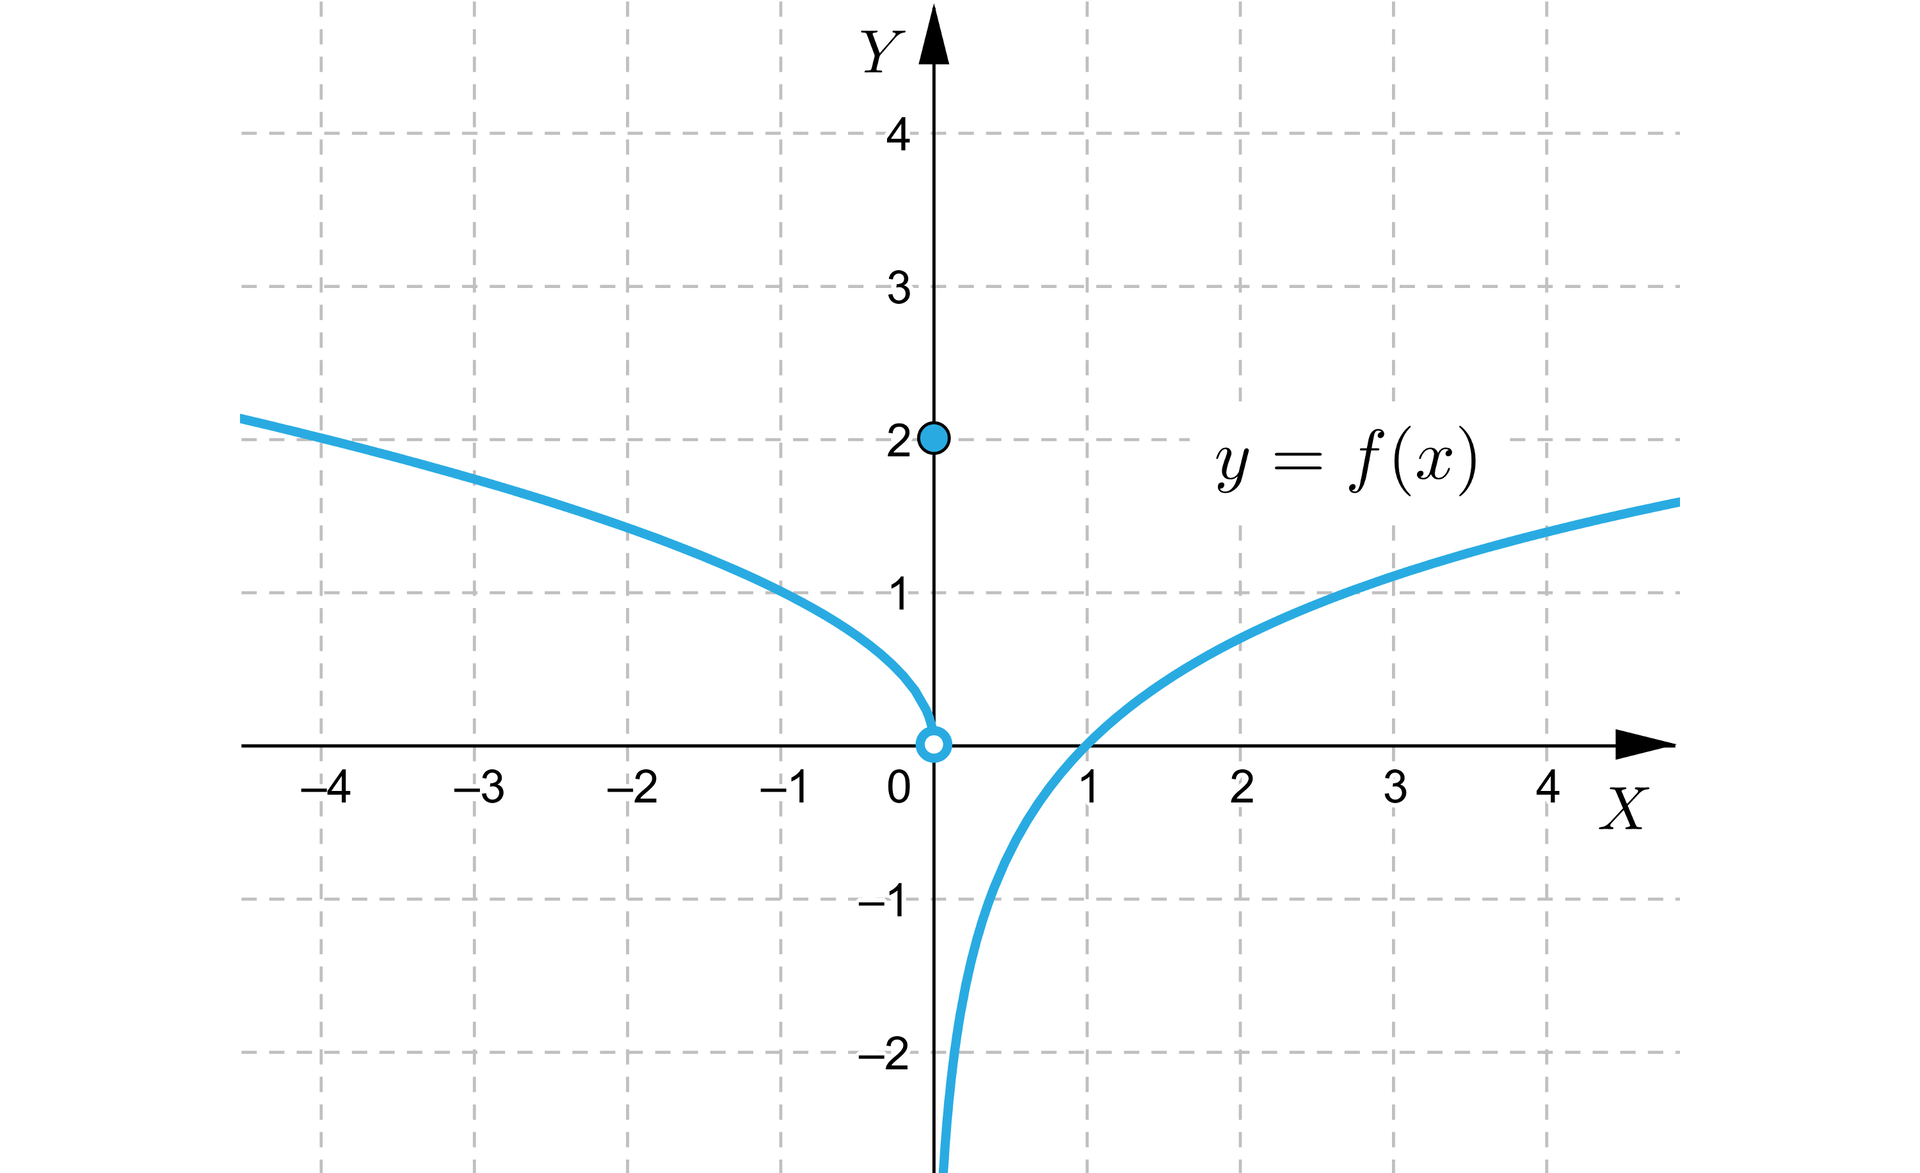 Ilustracja przedstawia układ współrzędnych z poziomą osią X od minus czterech do czterech oraz z pionową osią Y od minus dwóch do czterech. Na płaszczyźnie narysowano wykres funkcji  f składający się z trzech elementów. Pierwszą składową  wykresu jest krzywa pierwiastkowa znajdująca się w drugiej ćwiartce układ. Biegnie ona od minus nieskończoności, malejąc do niezamalowanego punktu   0;0. Drugą składową wykresu jest zamalowany punkt 0;2. Trzecią składową wykresu jest krzywa logarytmiczna biegnąca w czwartej i w pierwszej ćwiartce.